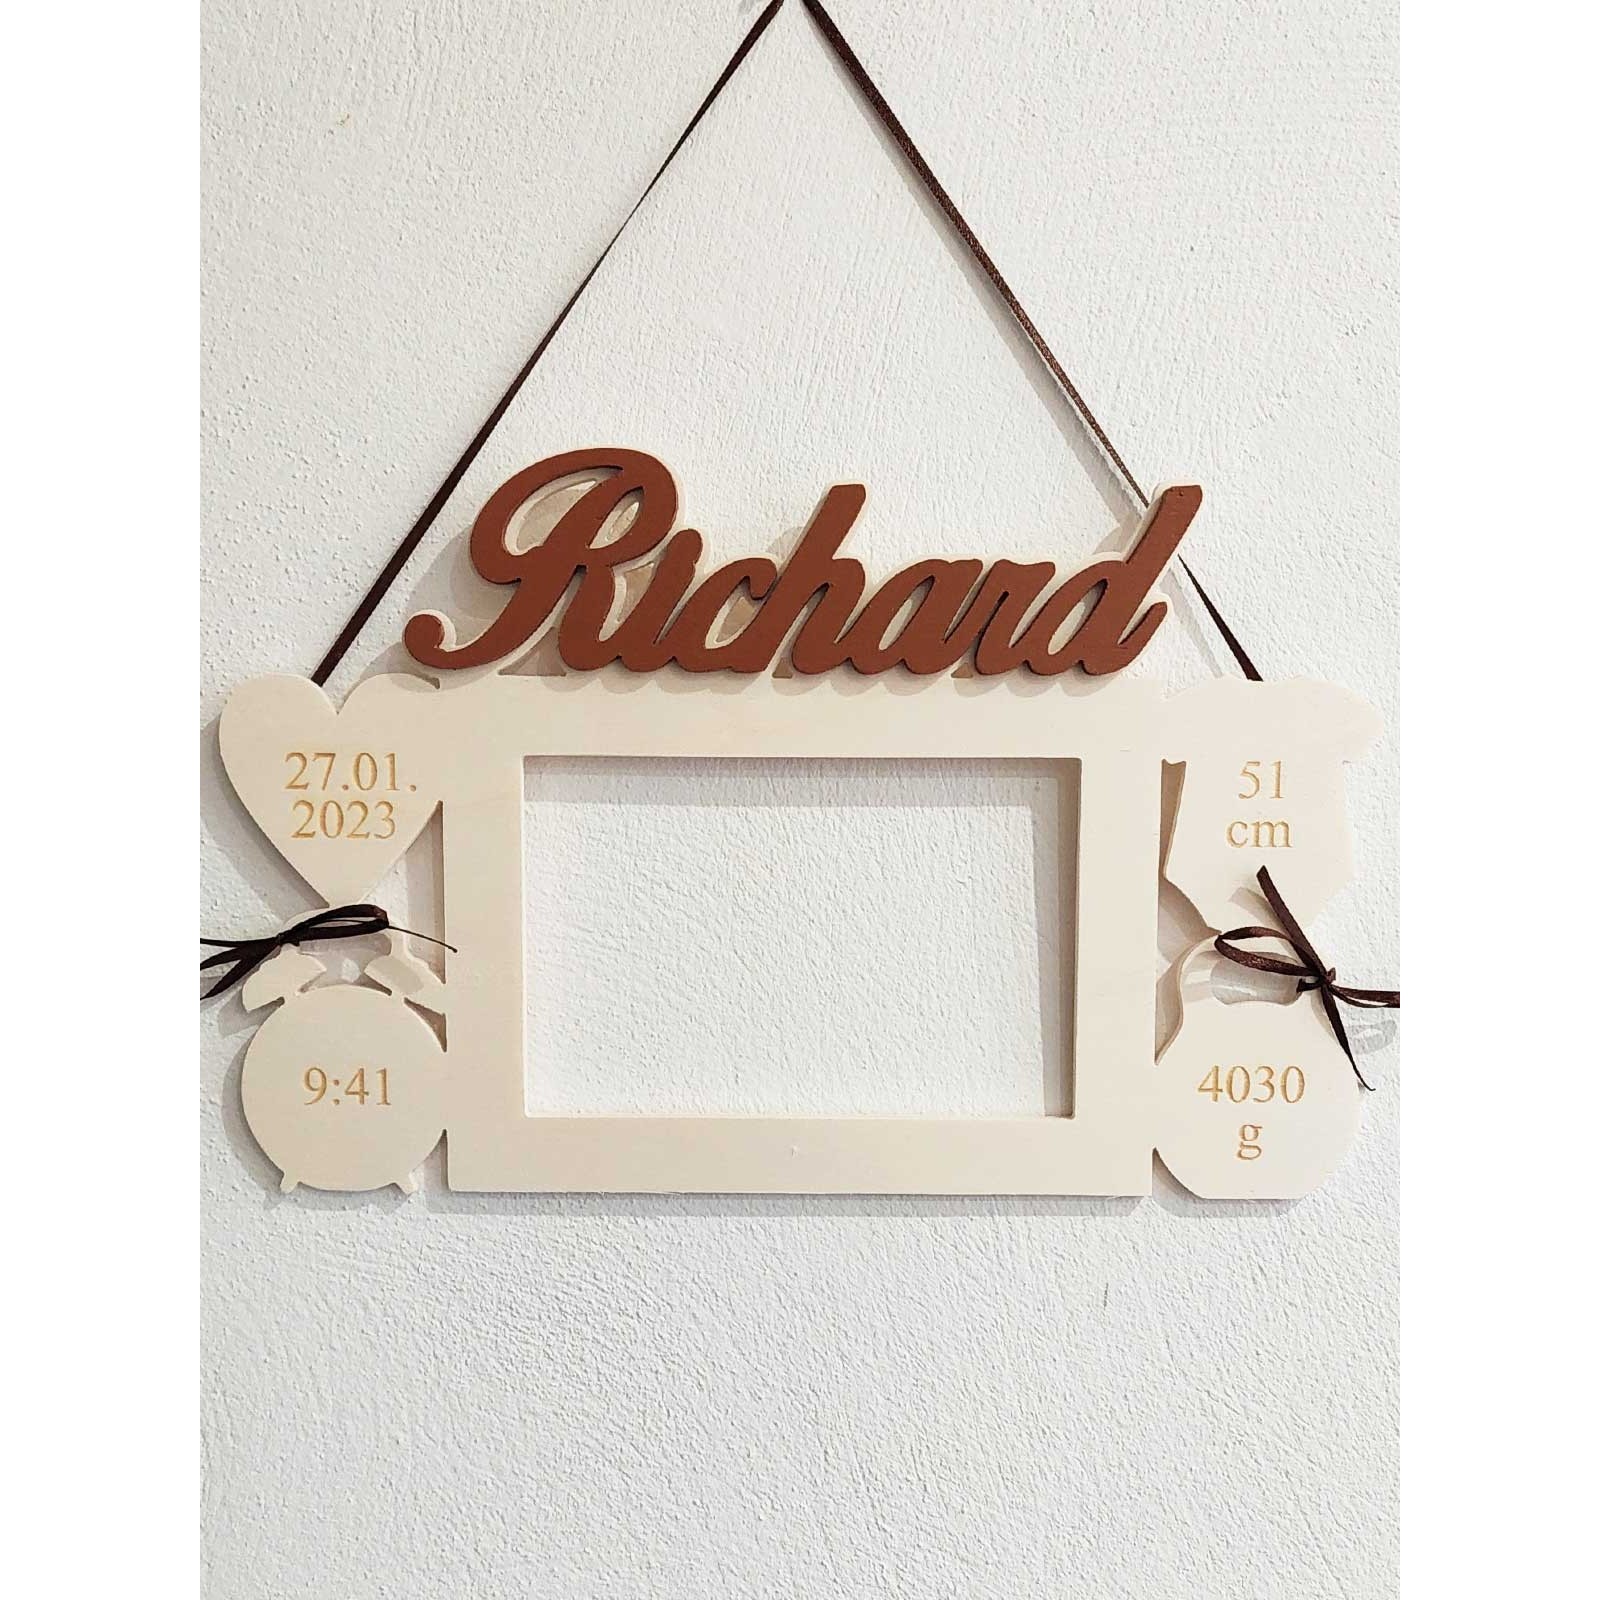 Wooden photo frame gift for granddaughter Richard